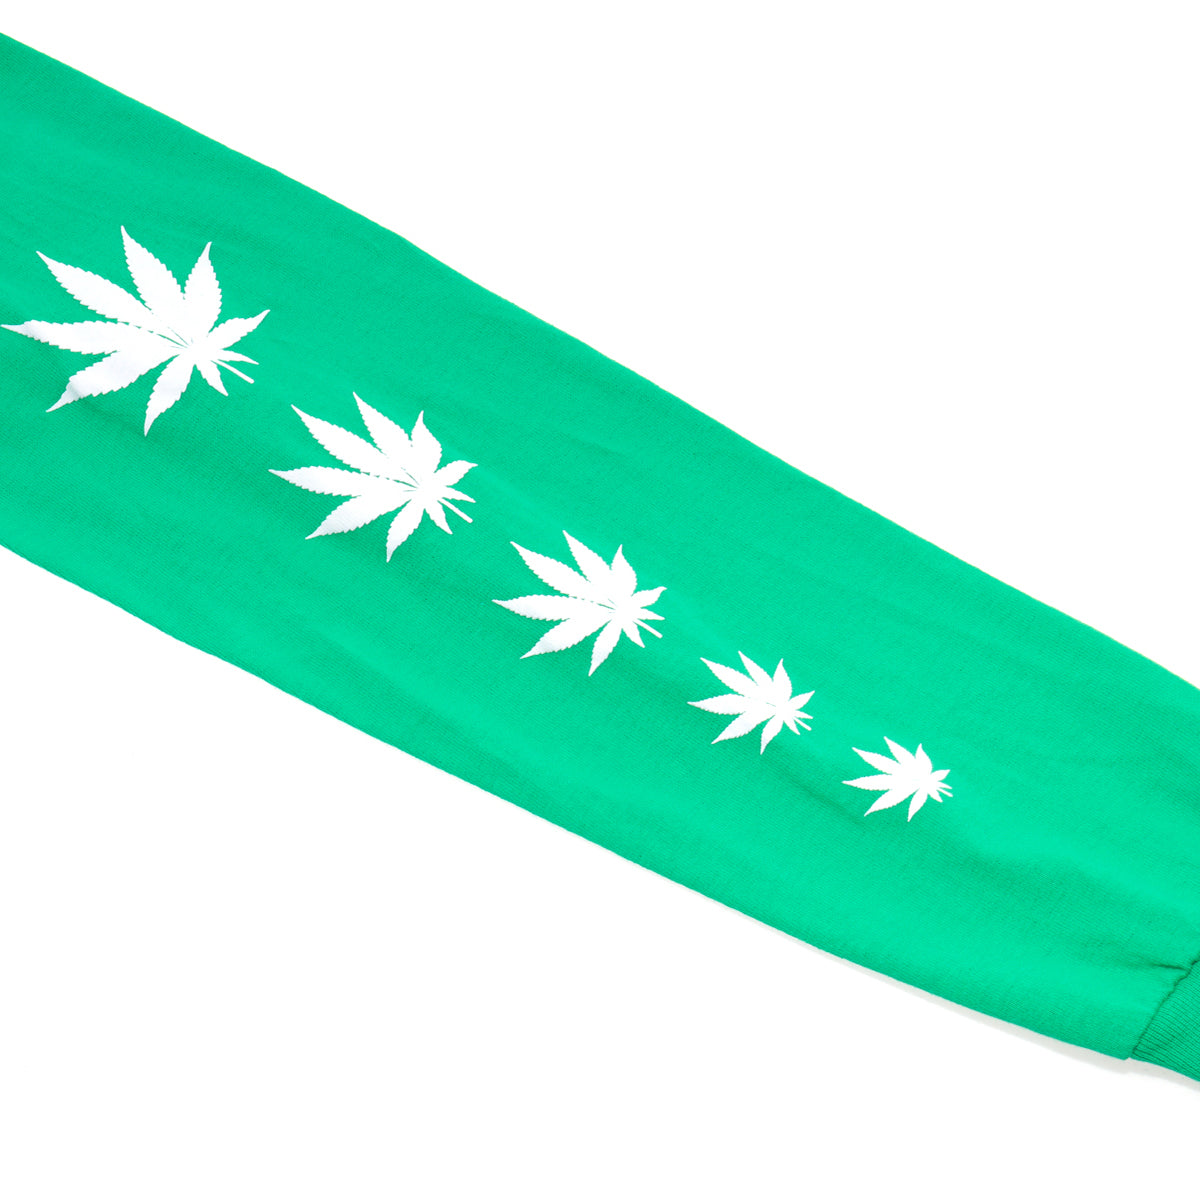 Dove & Grenade Logo Long Sleeve (Green)